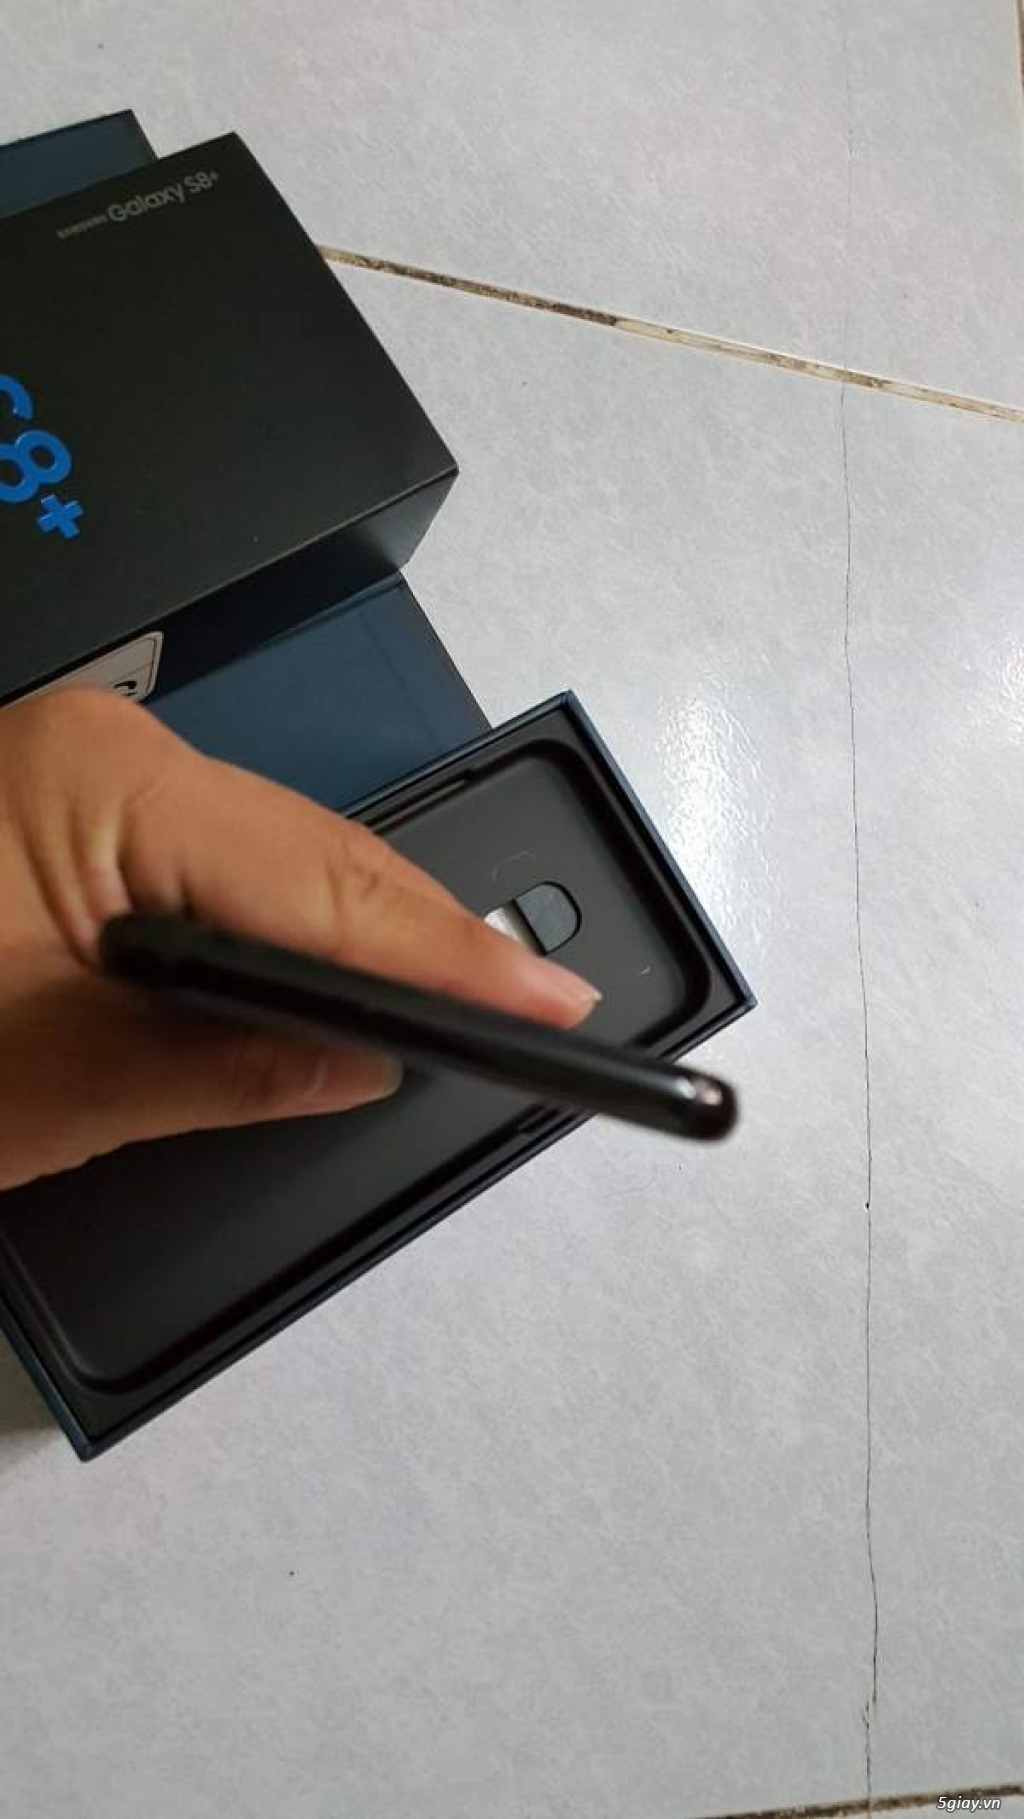 S8 plus đen 2 sim full box, Hàng Việt Nam bảo hành 5/2019 - 3